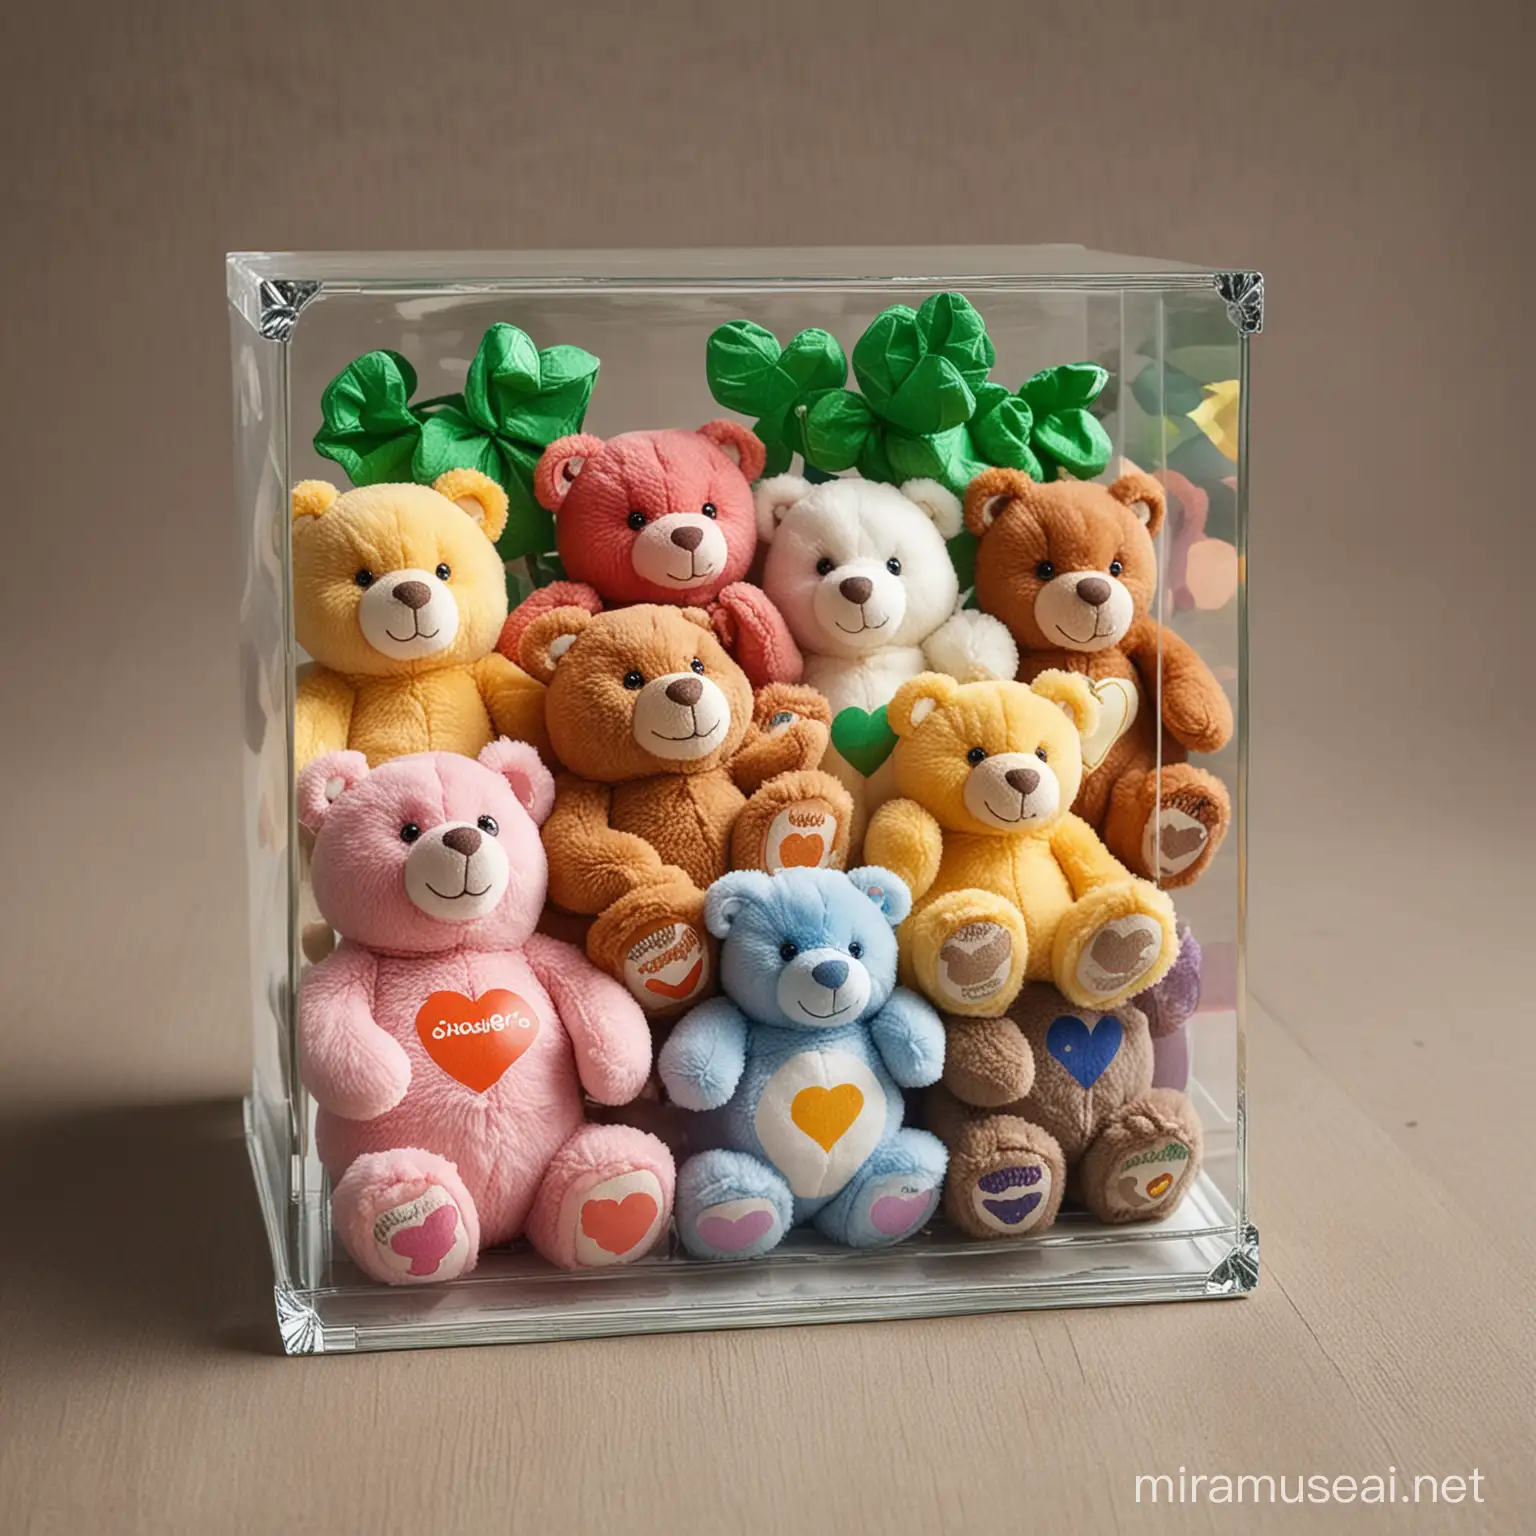 Muchos osos de peluche tipo osos cariñosos de distintos tamaños, metidos en una caja de cristal con crayolas y fichas de casino tréboles de 4 hojas 